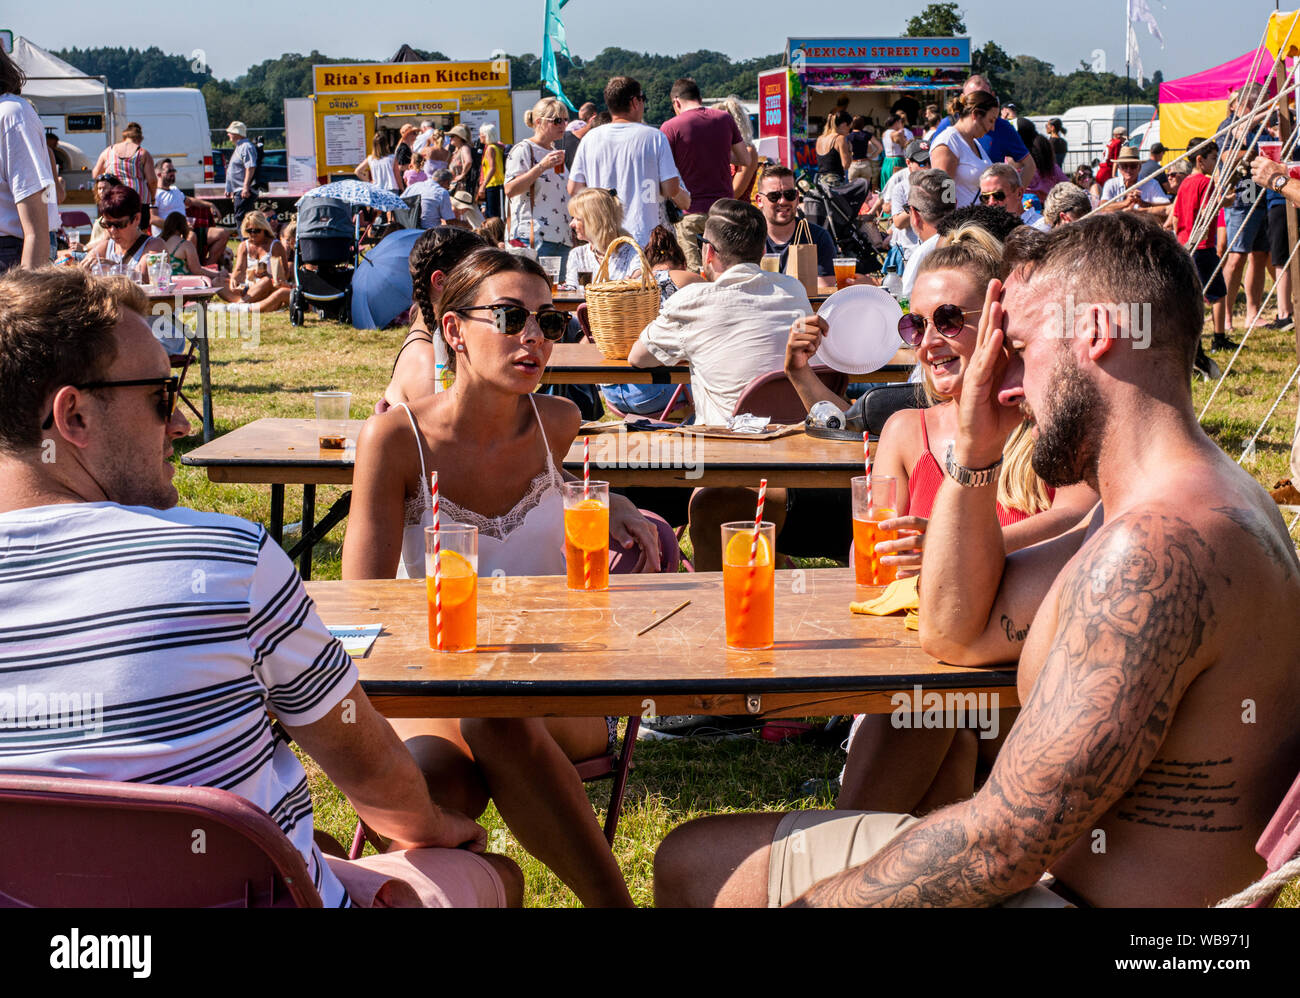 Amici affrontare l ondata di caldo con bevande fredde, Harrogate Food and Drink Festival di Ripley, Harrogate, Regno Unito, 25 agosto 2019 Foto Stock